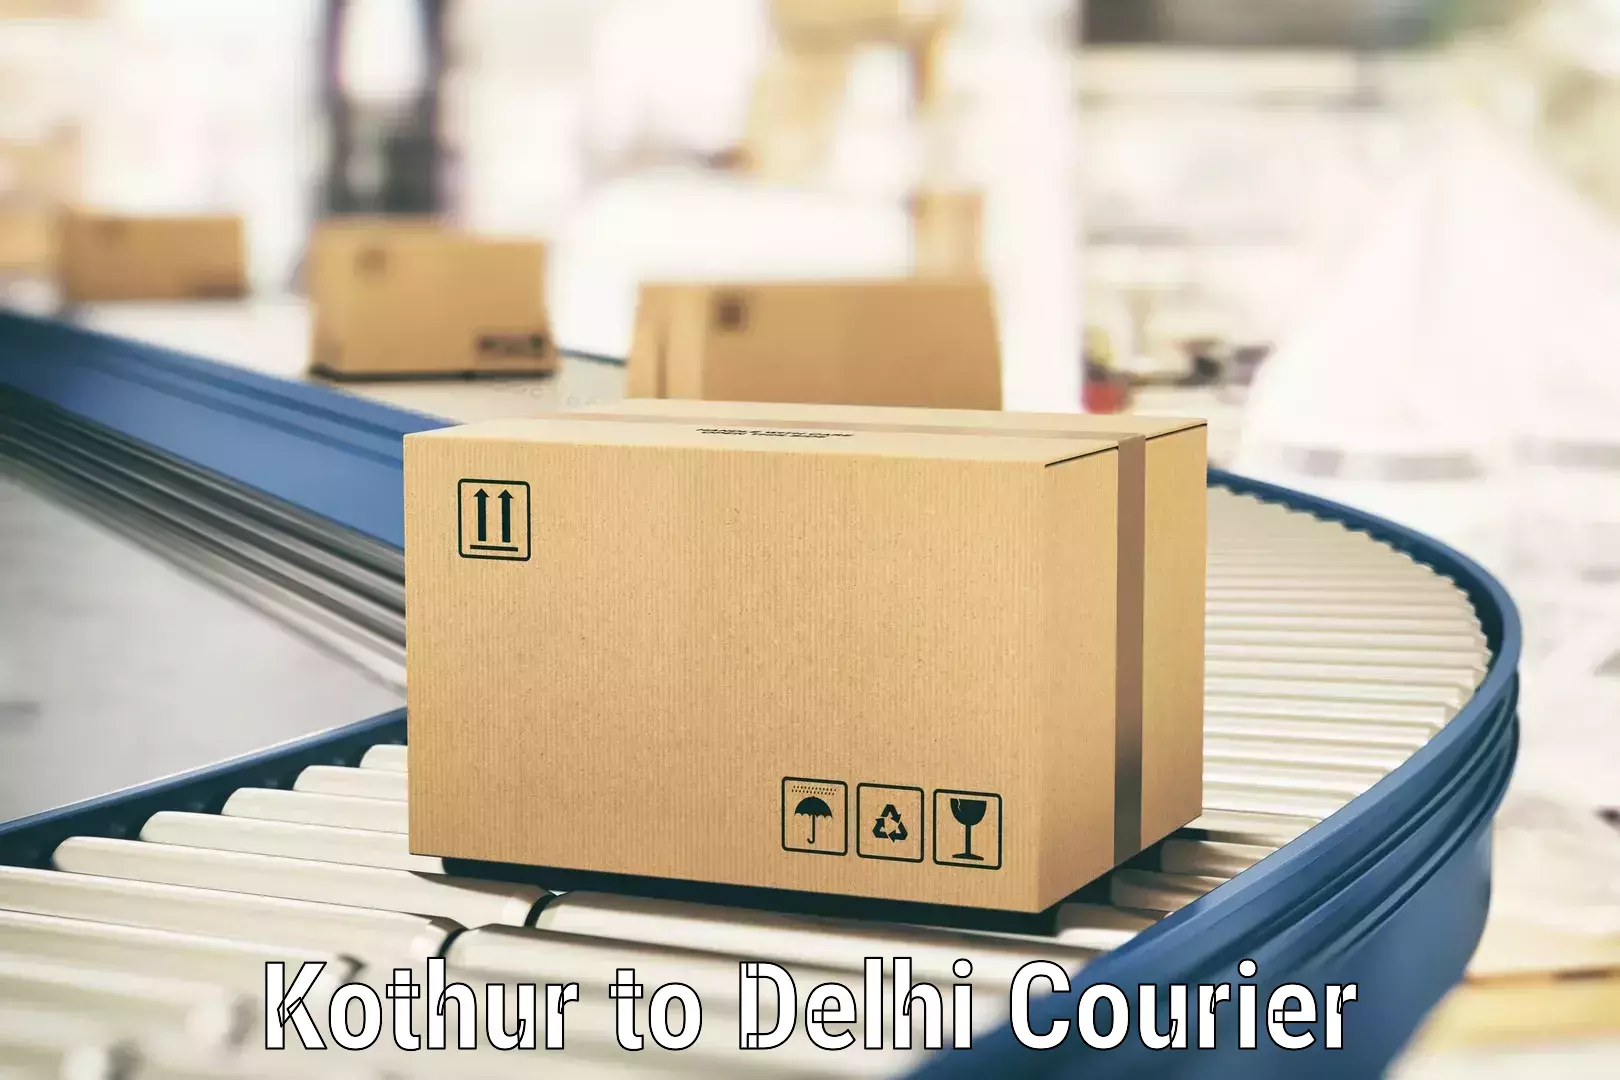 Comprehensive parcel tracking Kothur to NIT Delhi